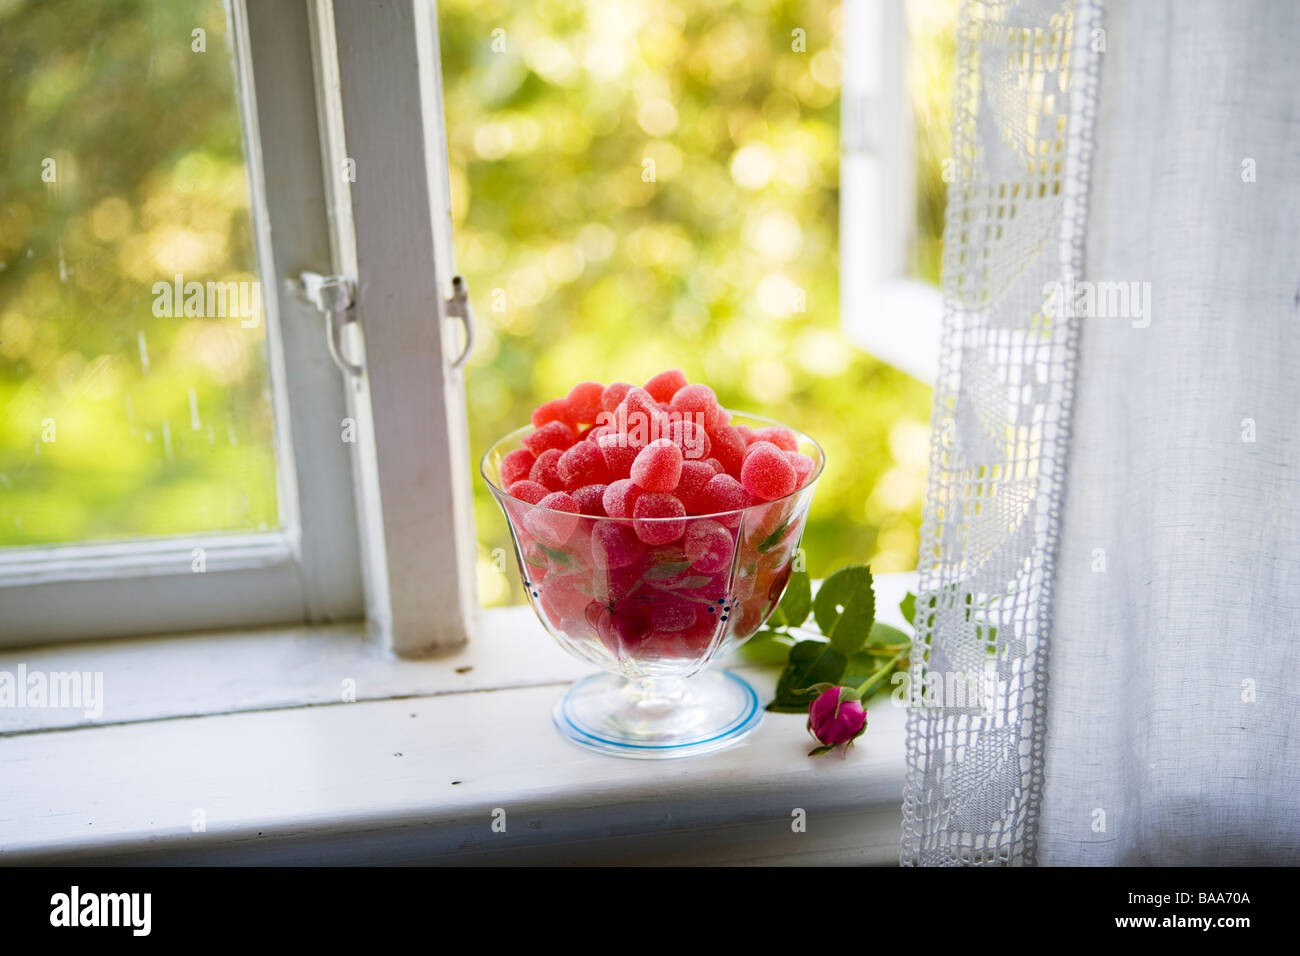 Dans un bol de bonbons dans une fenêtre, en Suède. Banque D'Images